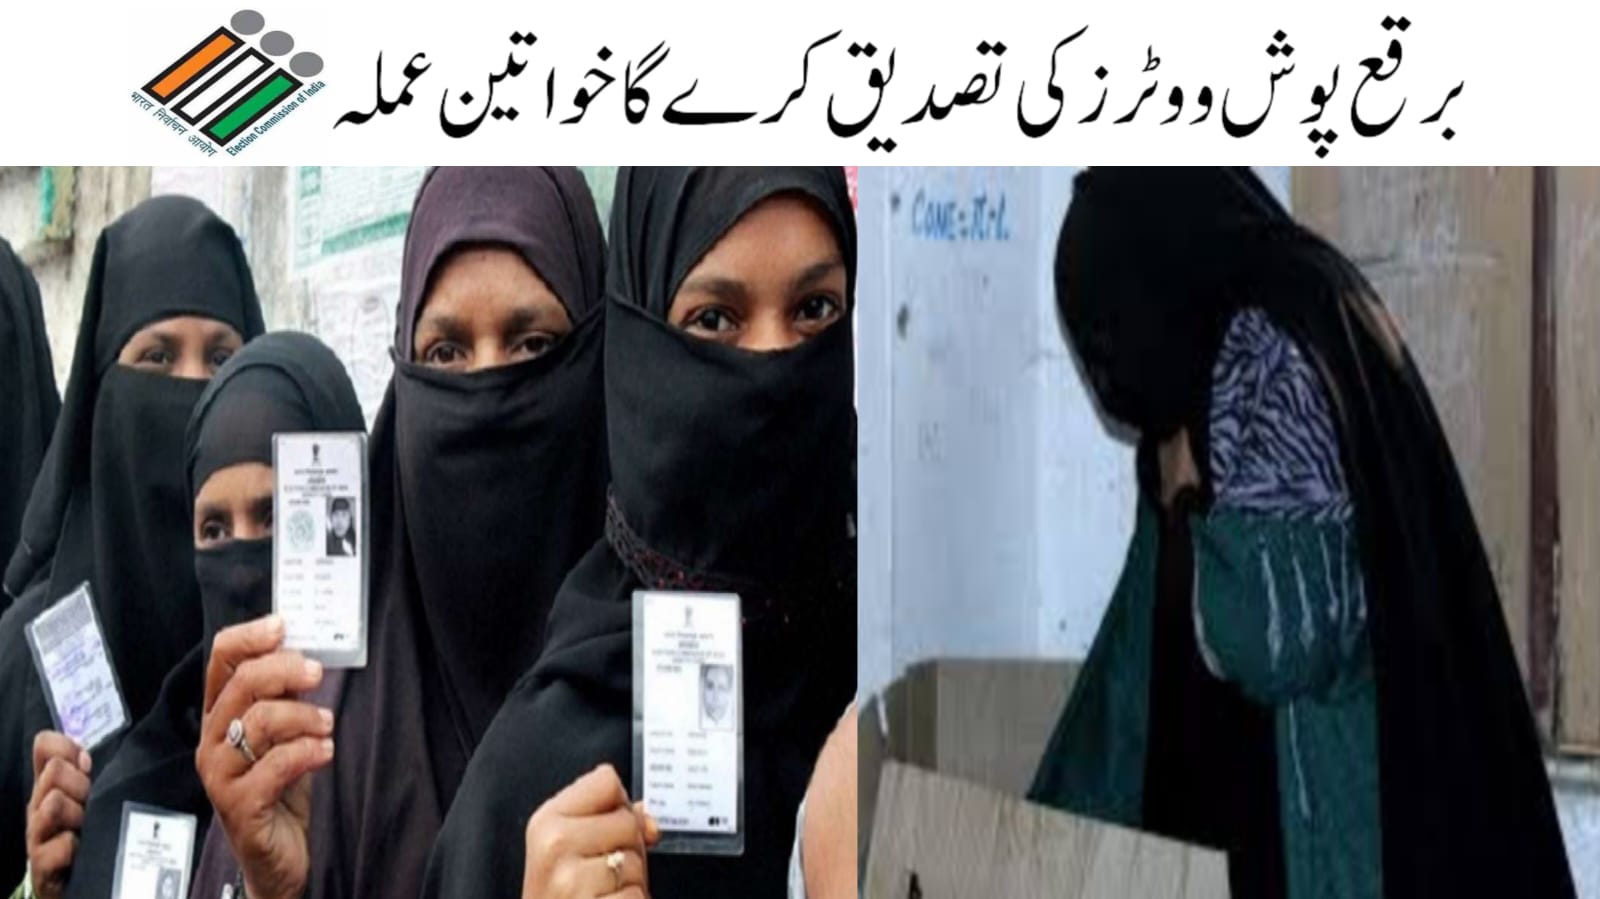 حیدرآباد: خواتین پولنگ عملہ برقع پوش خواتین ووٹرز کی تصدیق کے لیے ہوگا تعینات